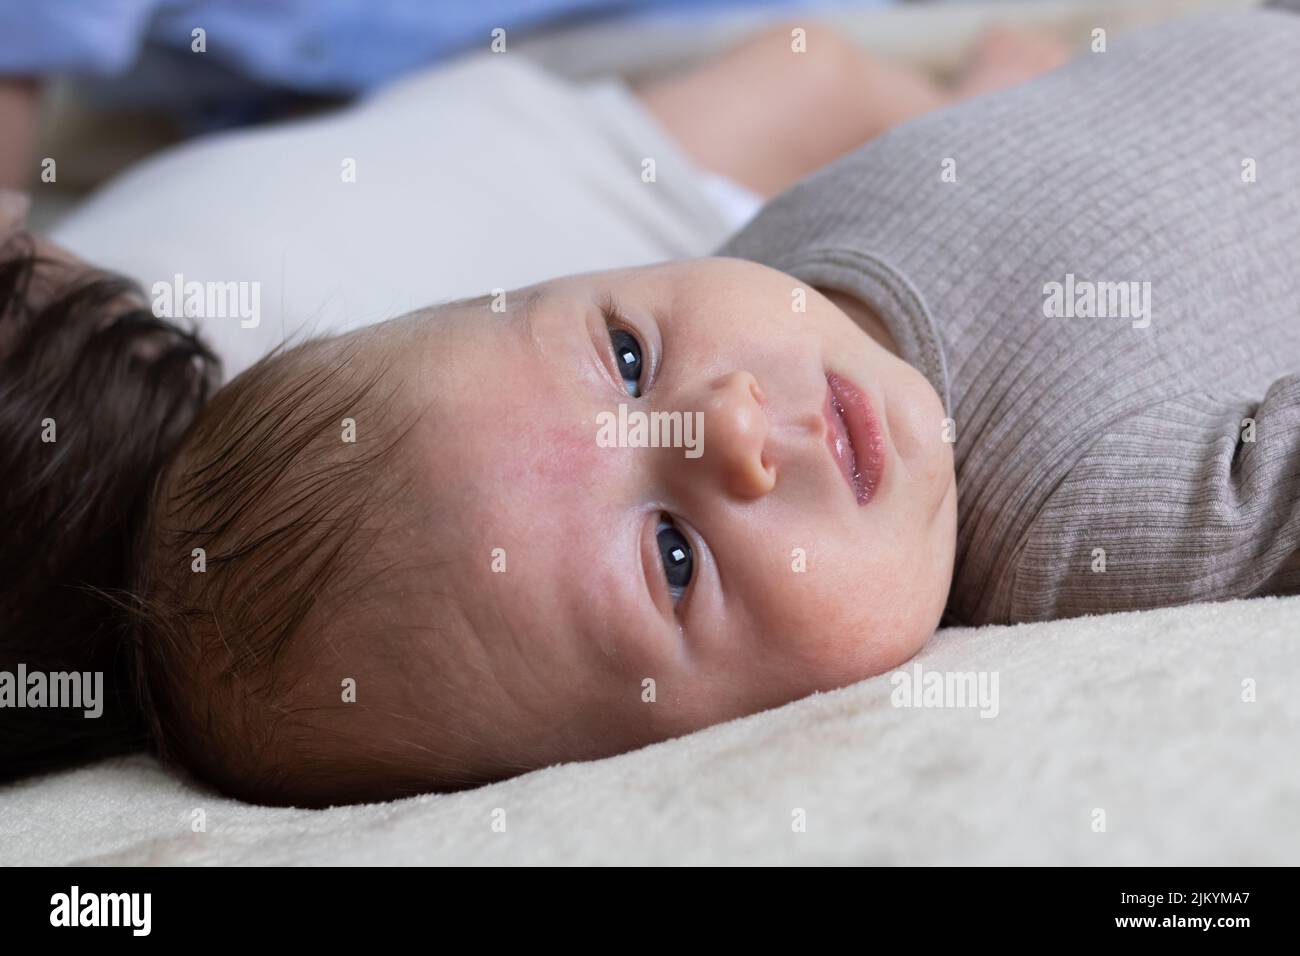 Un gros plan d'un bébé nouveau-né mignon allongé sur une couverture blanche Banque D'Images